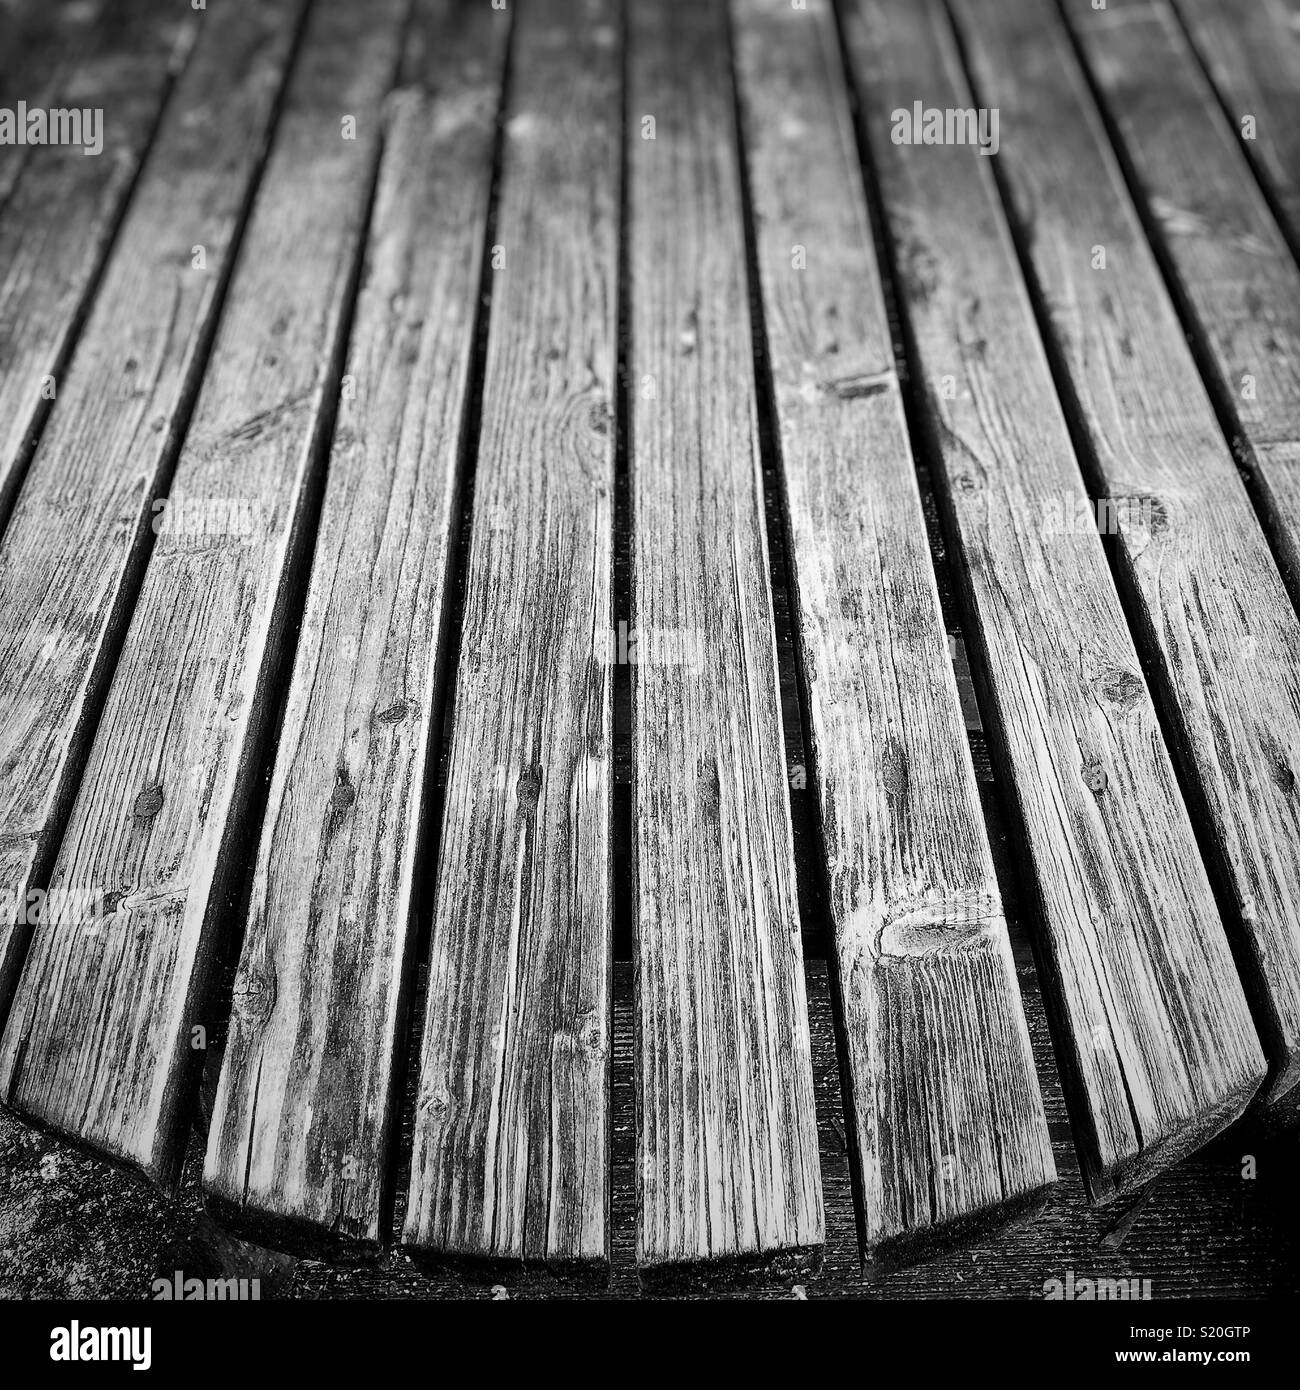 Wooden garden table Stock Photo